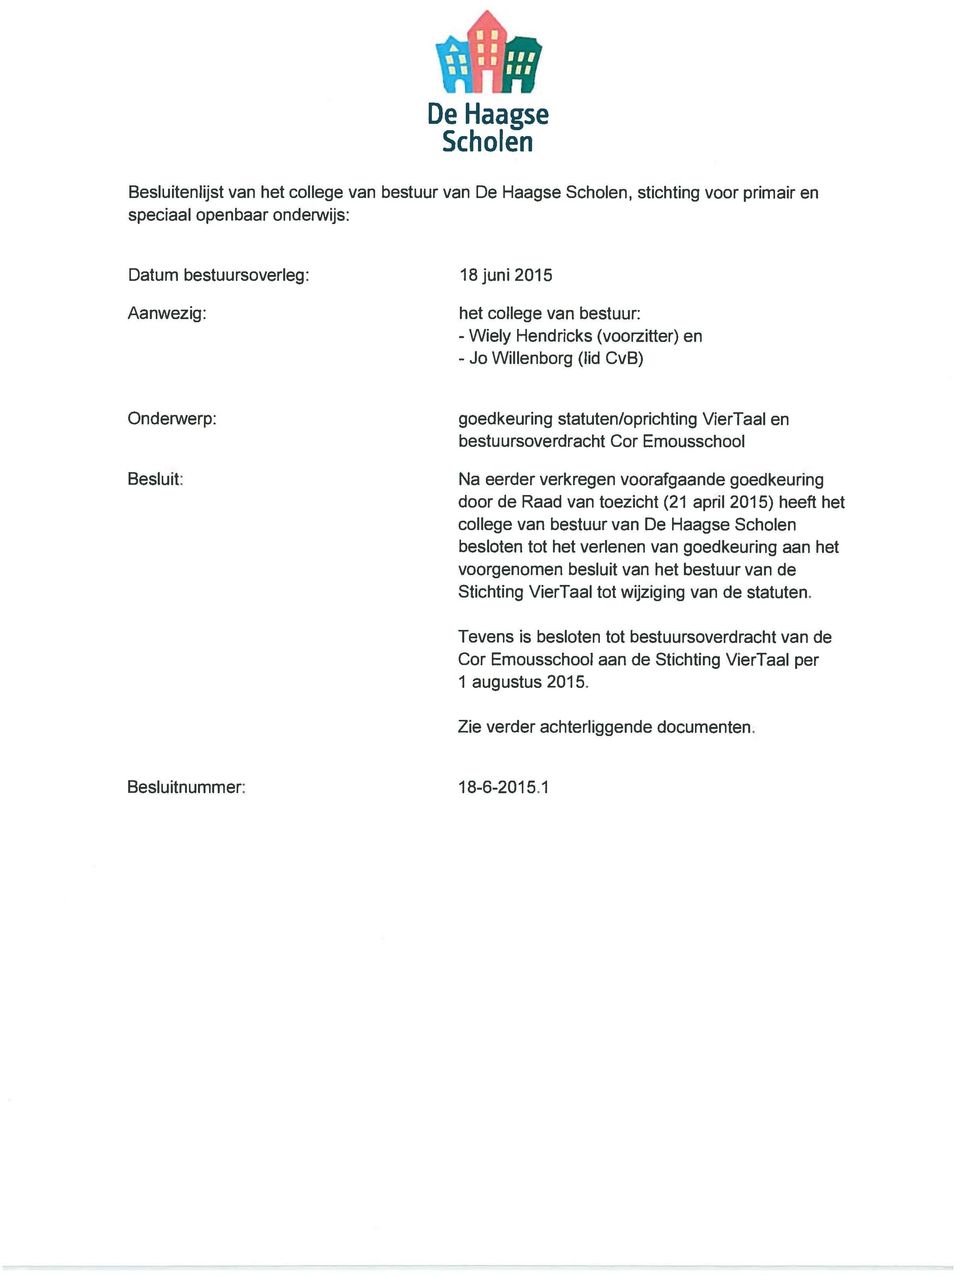 voorafgaande goedkeuring door de Raad van toezicht (21 april 2015) heeft het college van bestuur van De Haagse Scholen besloten tot het verlenen van goedkeuring aan het voorgenomen besluit van het